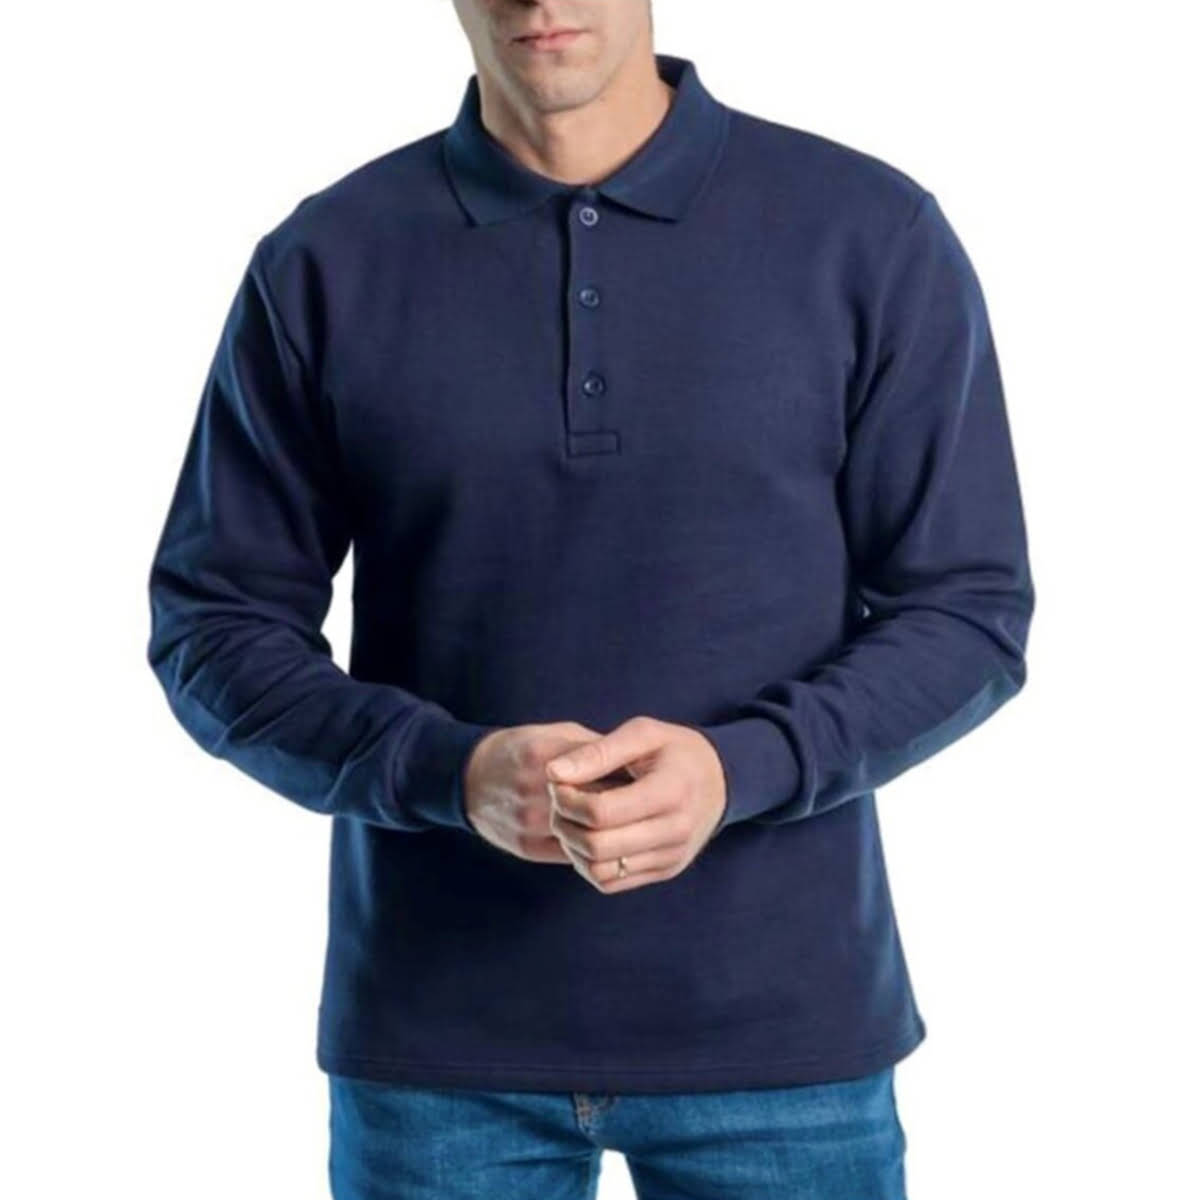 Polo yaka kalın kışlık sweatshirt %100 pamuk yumuşak iplikten içi şardonlu kumaştan üretilmiş baskıya ve nakışa uygun personel giyim